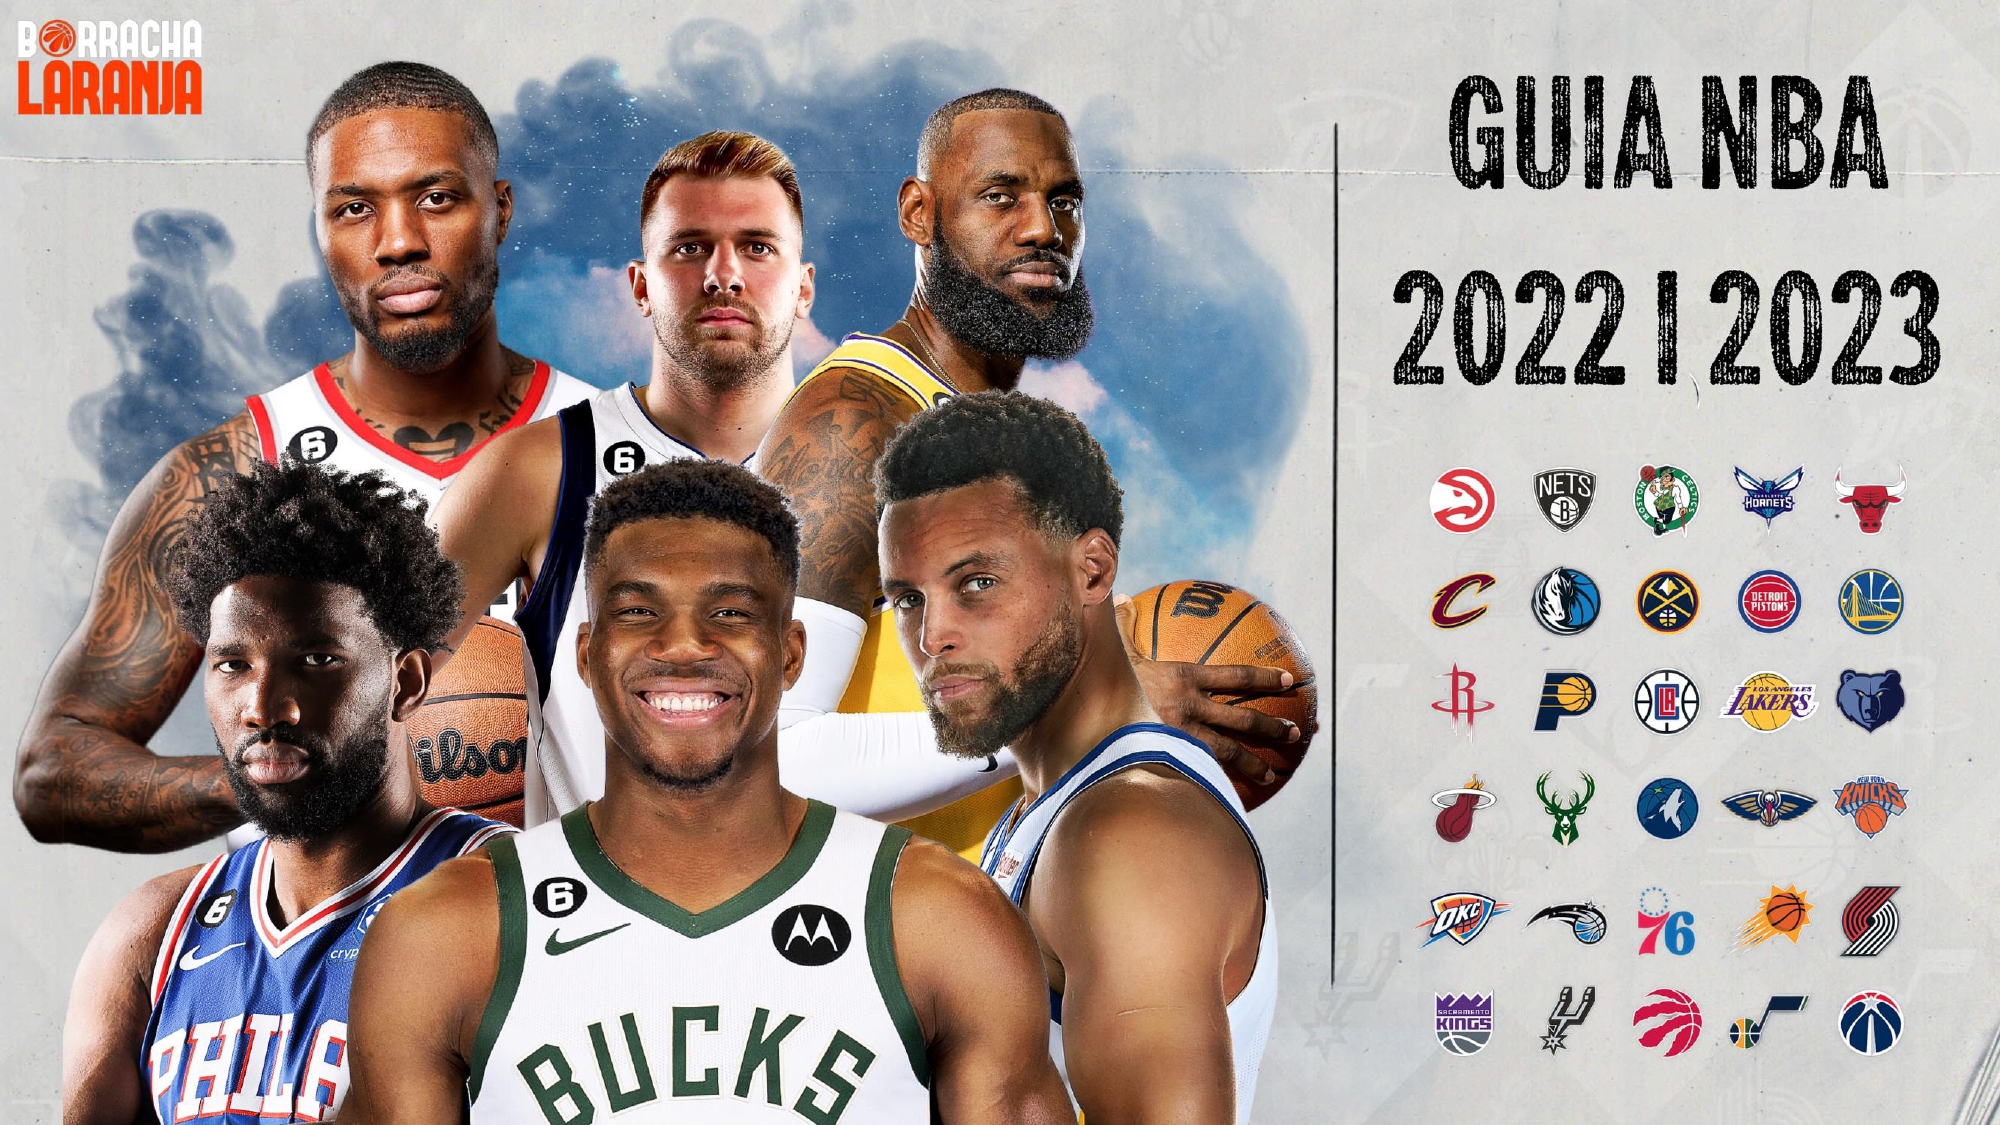 Guia NBA 2022-23 | Borracha Laranja